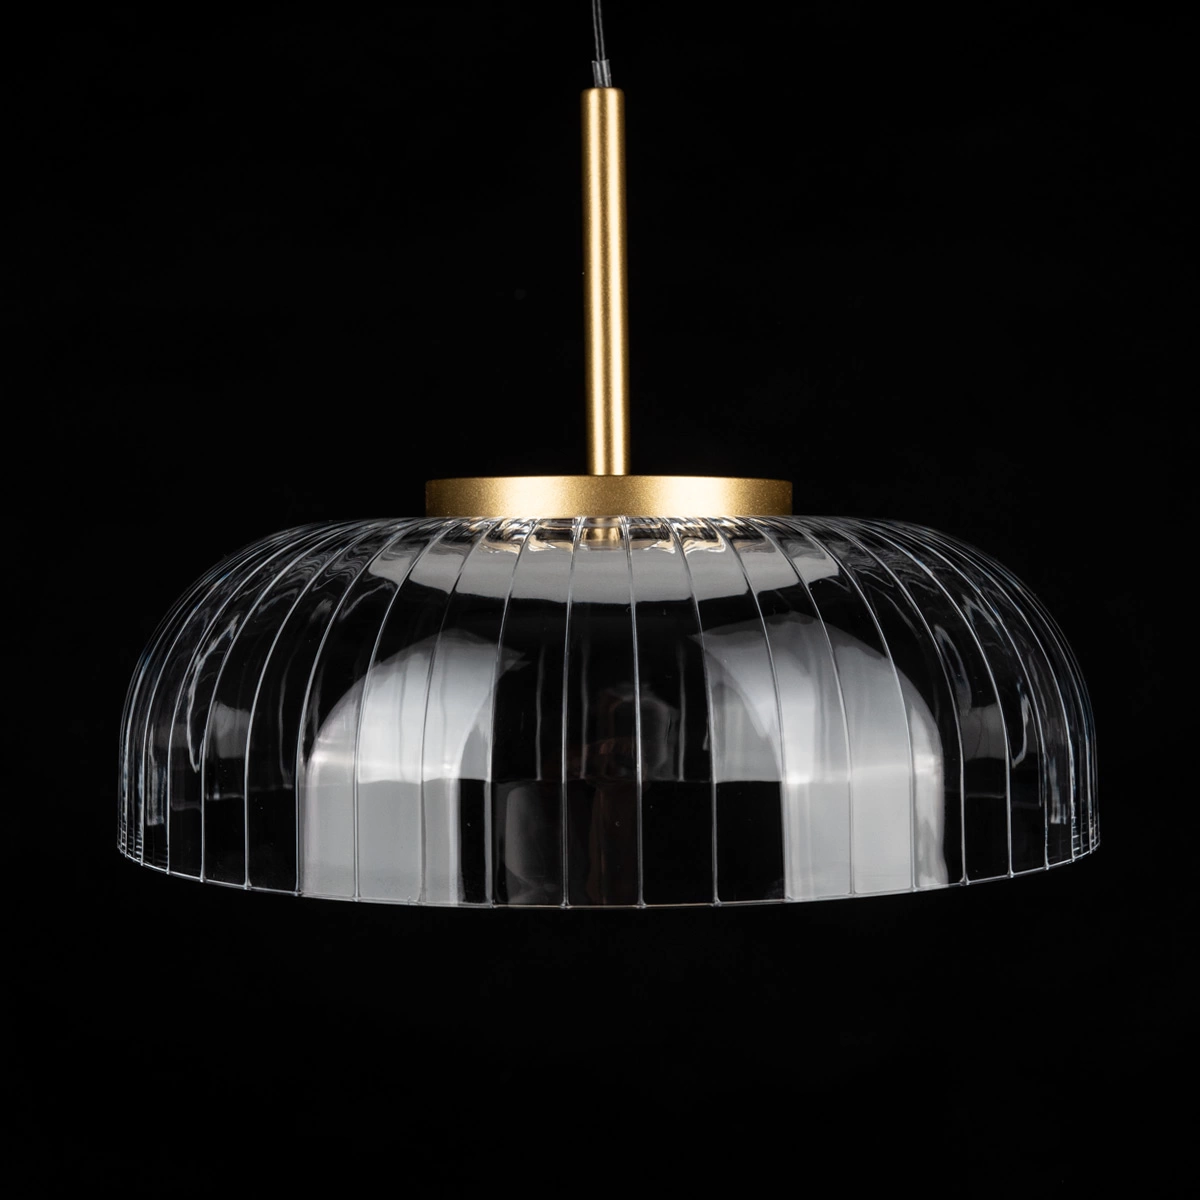 VITRUM Lampe de chevet LED By Altavola Design